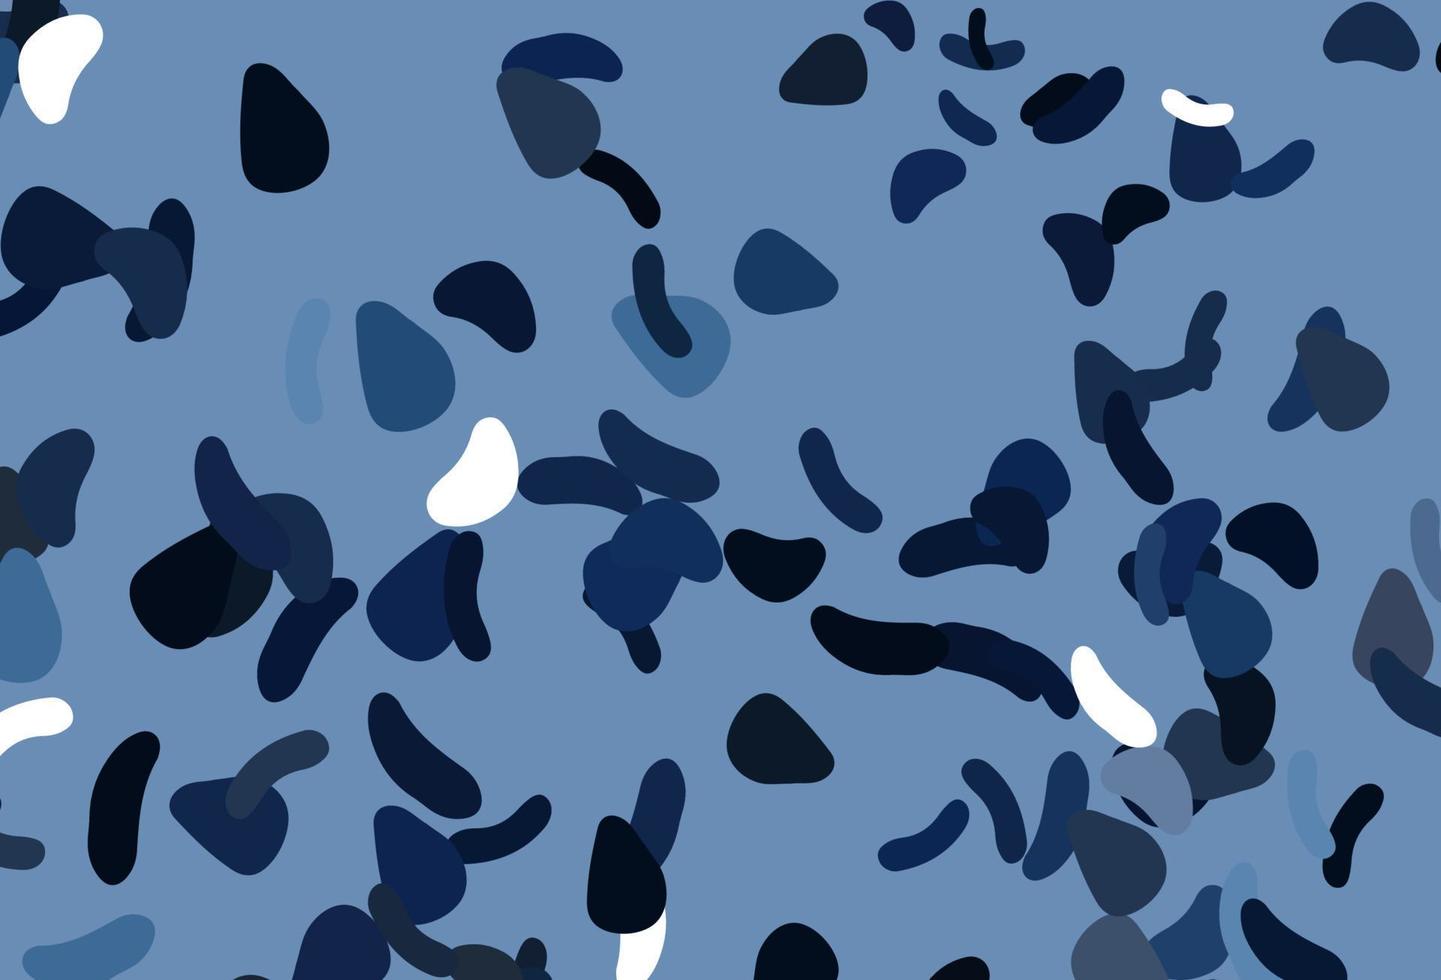 padrão de vetor azul claro com formas caóticas.